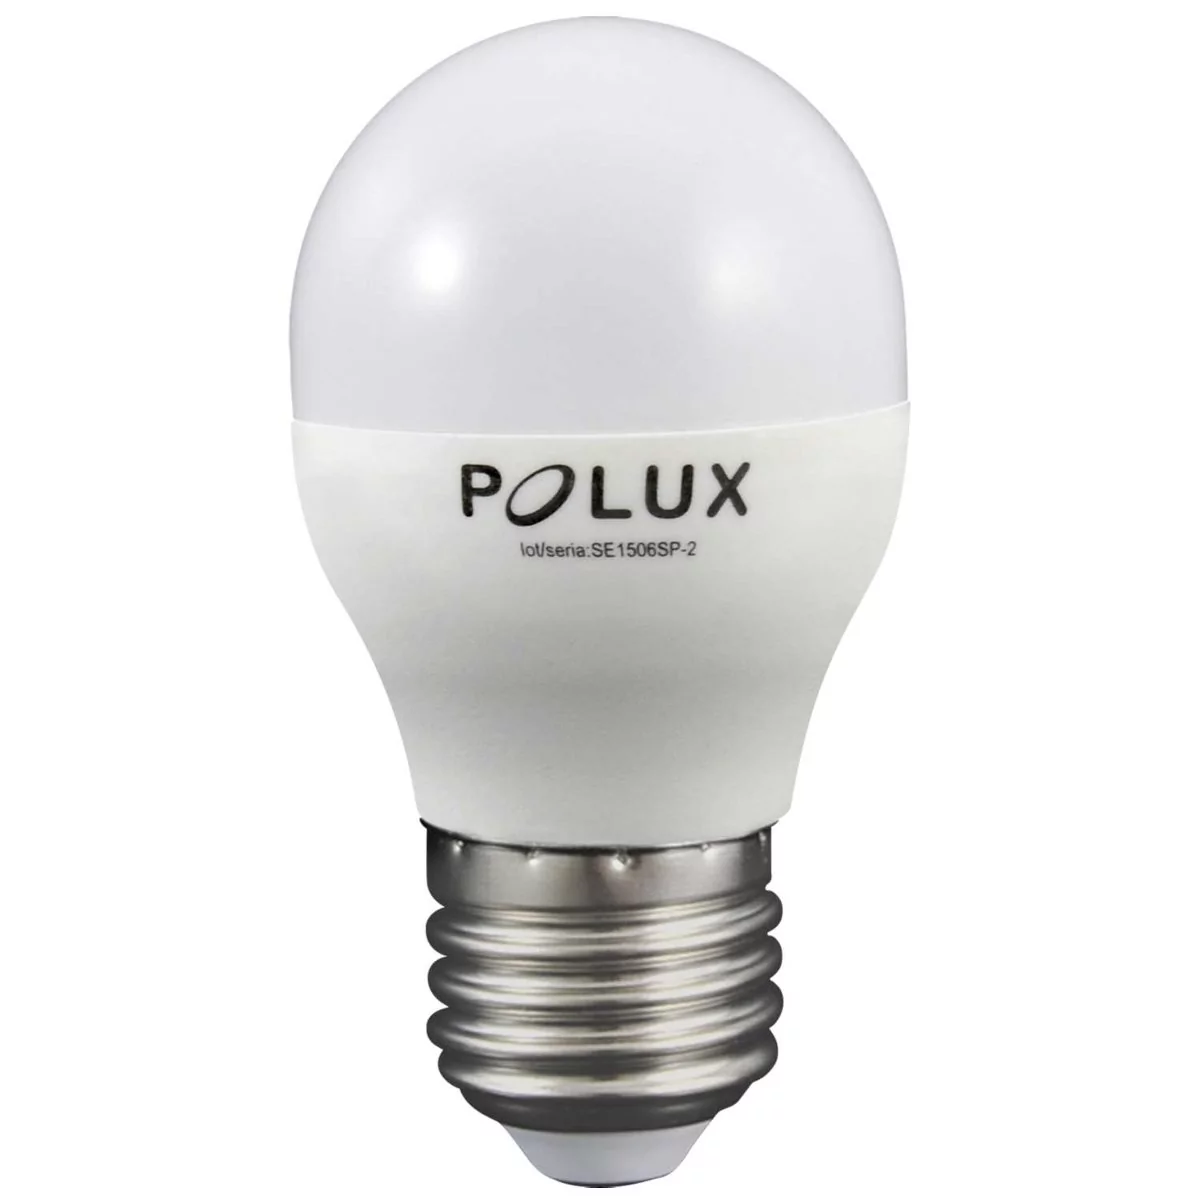 Polux Żarówka LED 6,3W E27 560lm 303943